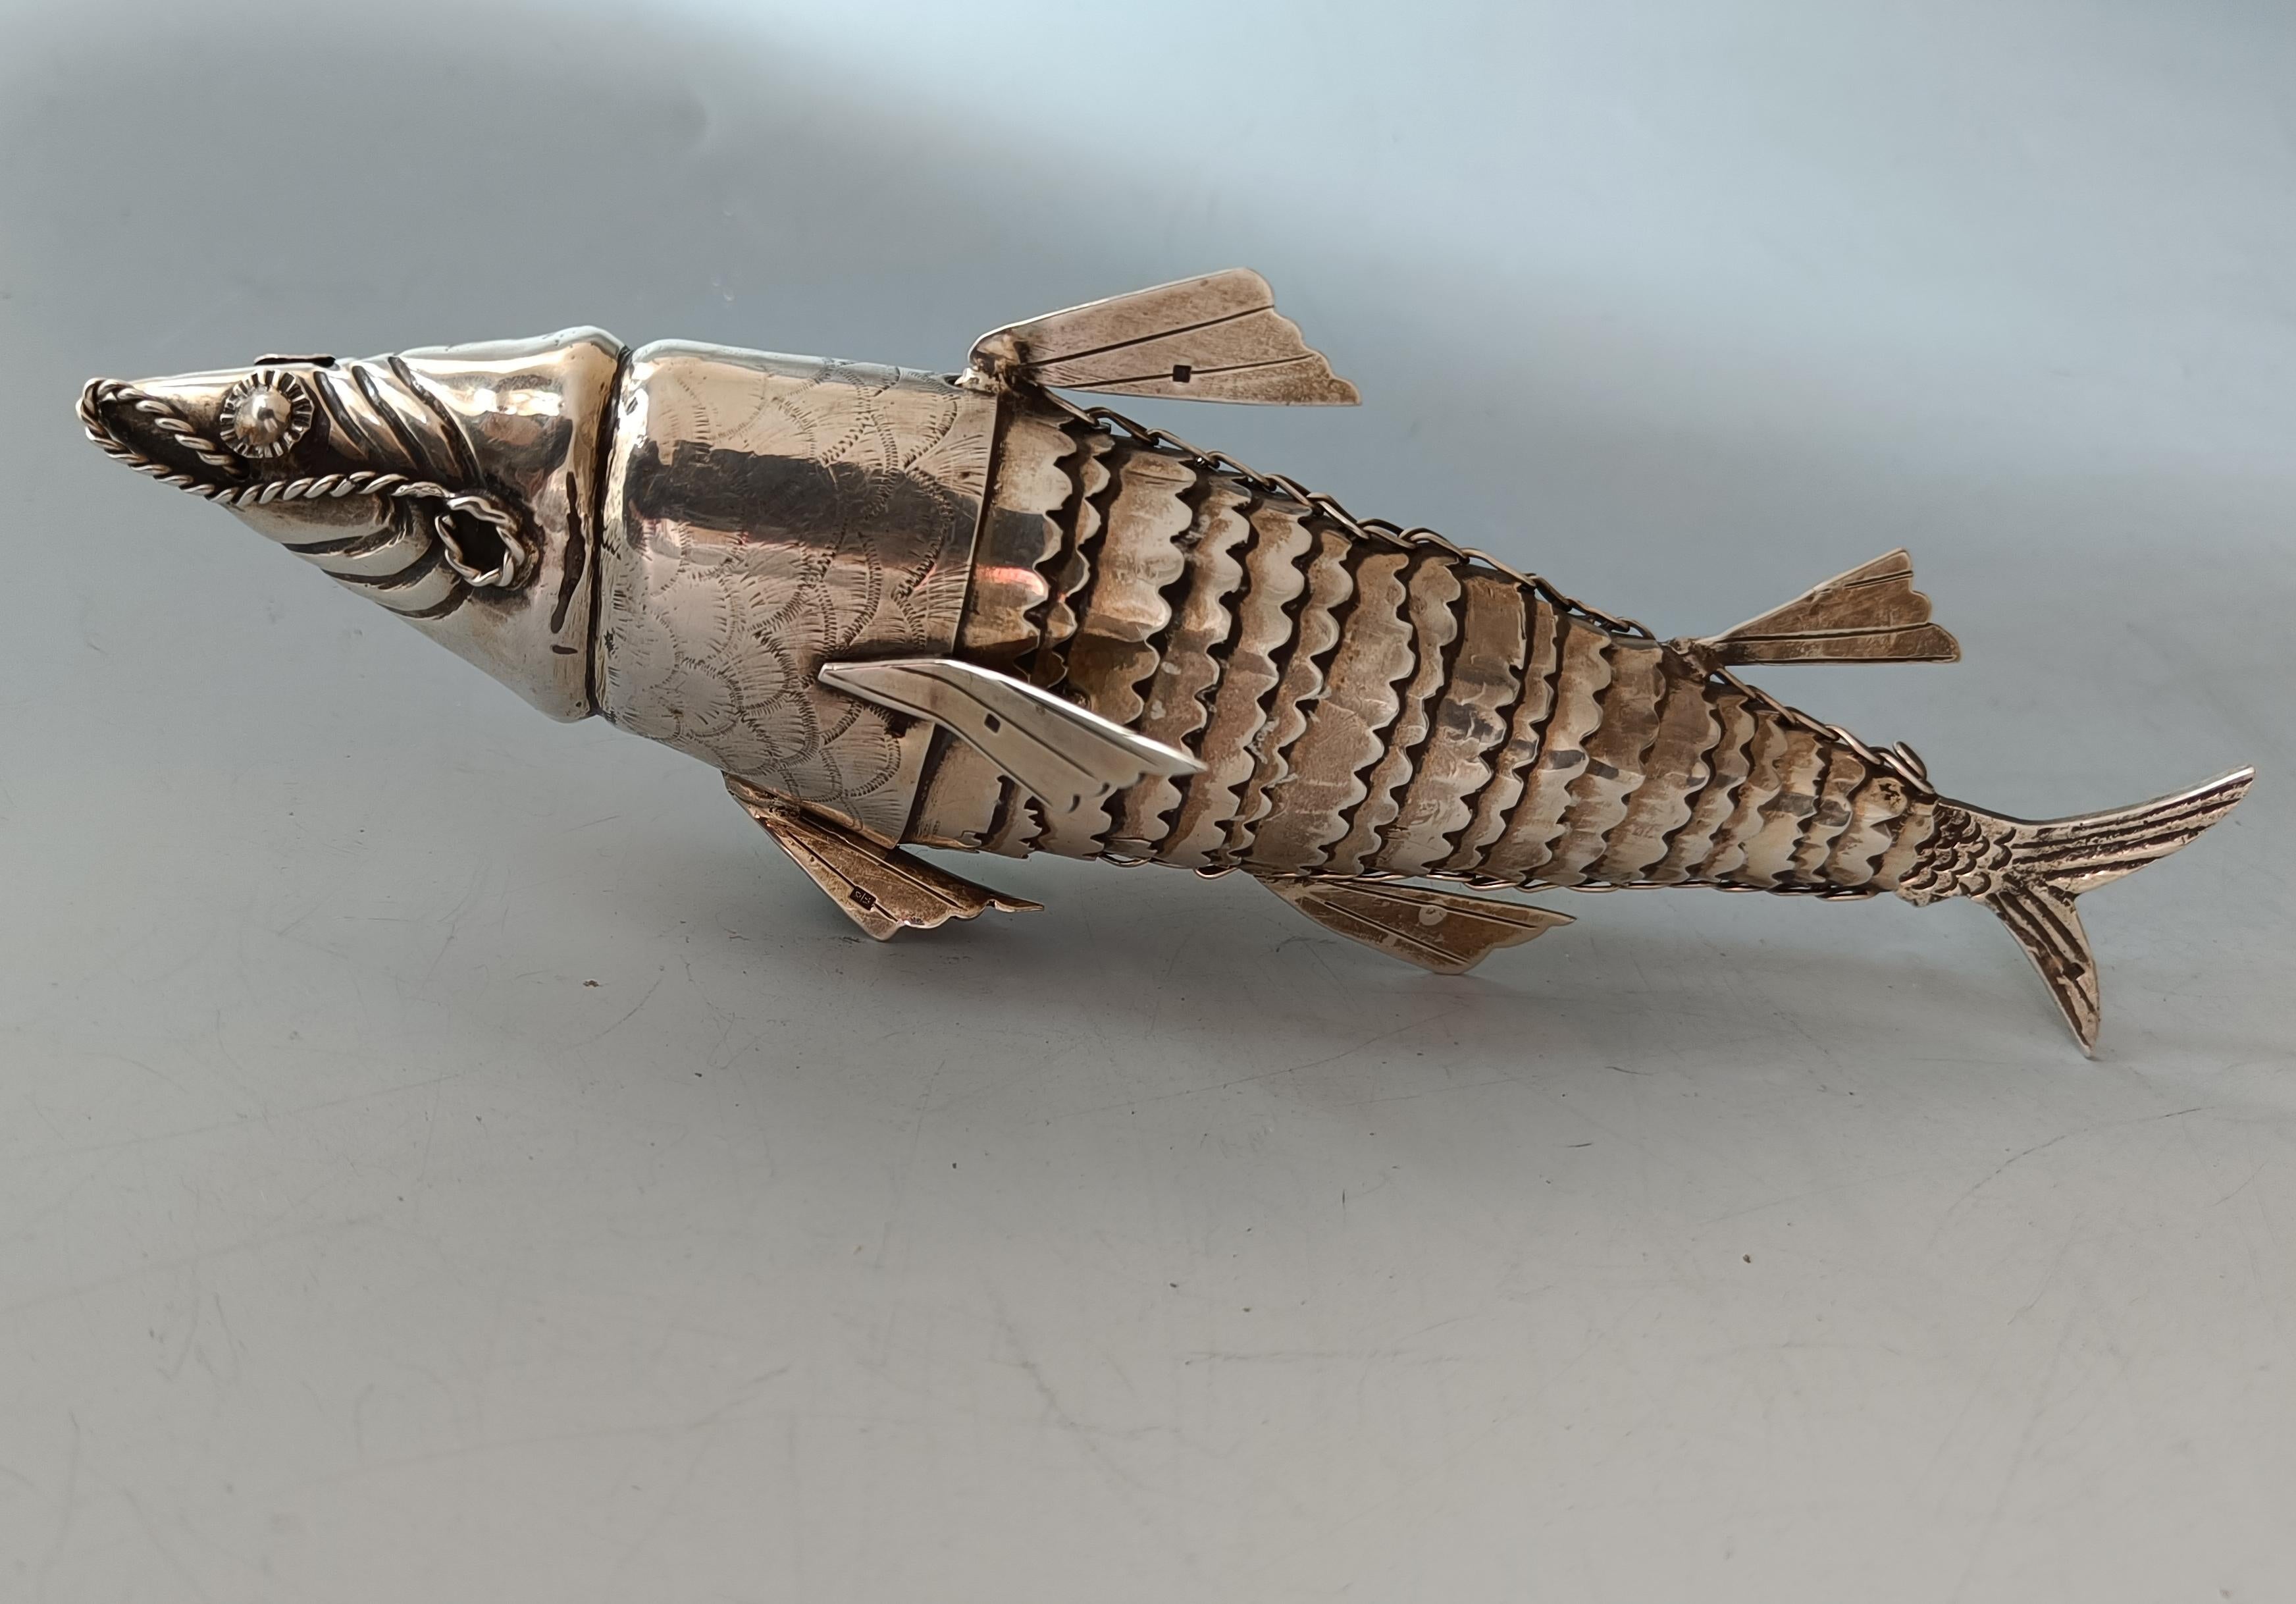 Feine Qualität Antike Silber artikuliert Fisch gepunzt
Eine sehr feine Qualität Articulated Silber Fisch Modell
Fachmännisch gefertigt mit wunderschön detaillierter Silberverarbeitung,   
Gepunzt an verschiedenen Stellen mit Herstellermarke und